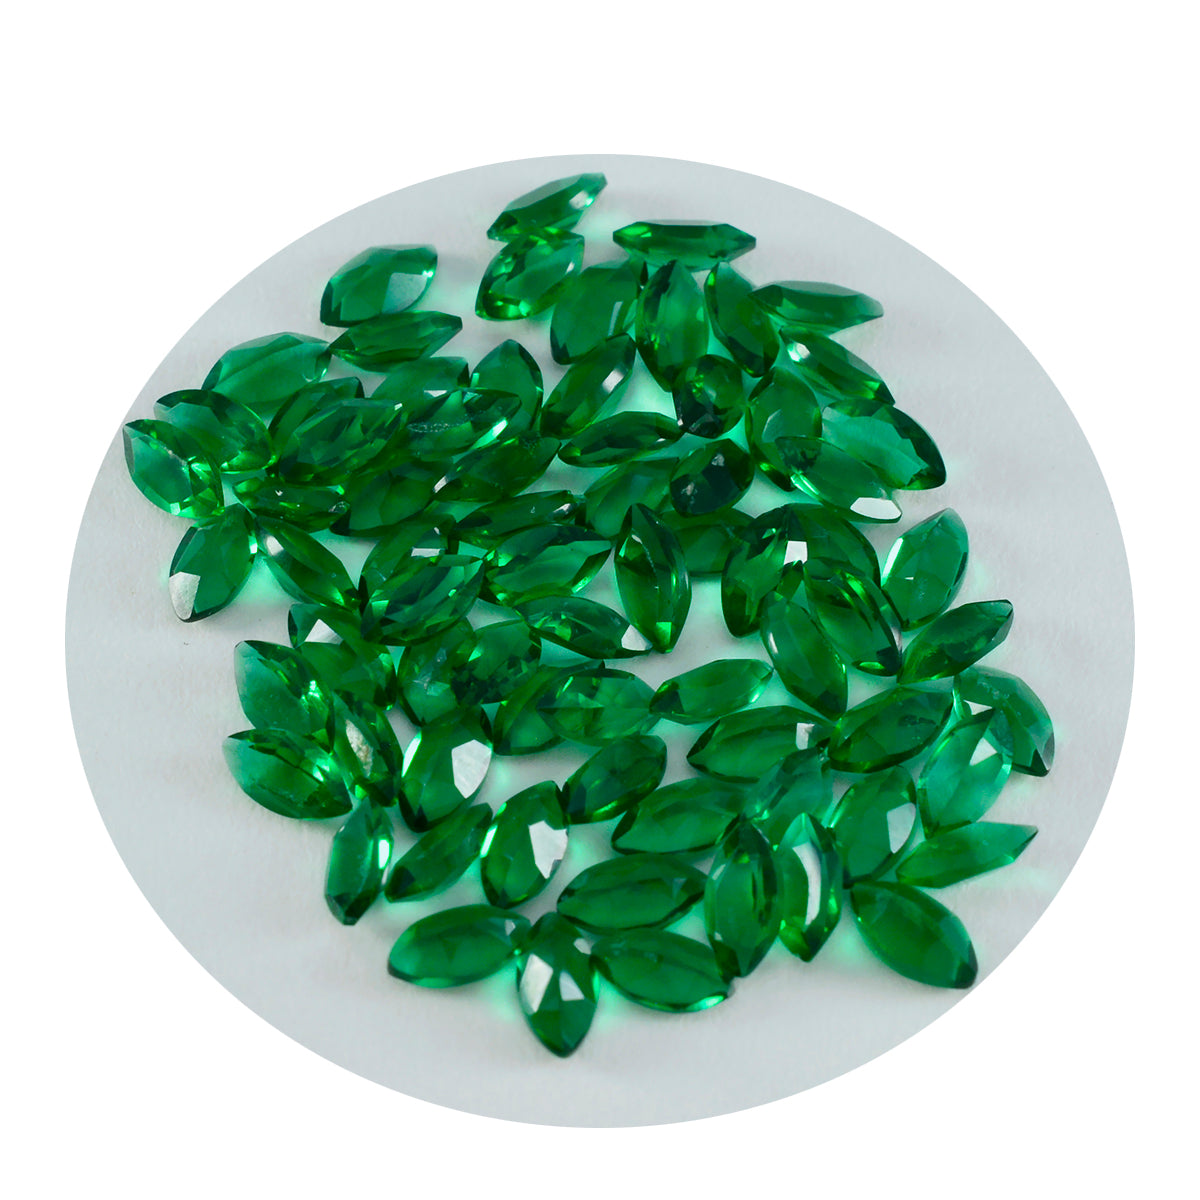 Riyogems 1 Stück grüner Smaragd mit CZ, facettiert, 2,5 x 5 mm, Marquise-Form, Schönheitsqualitätsstein